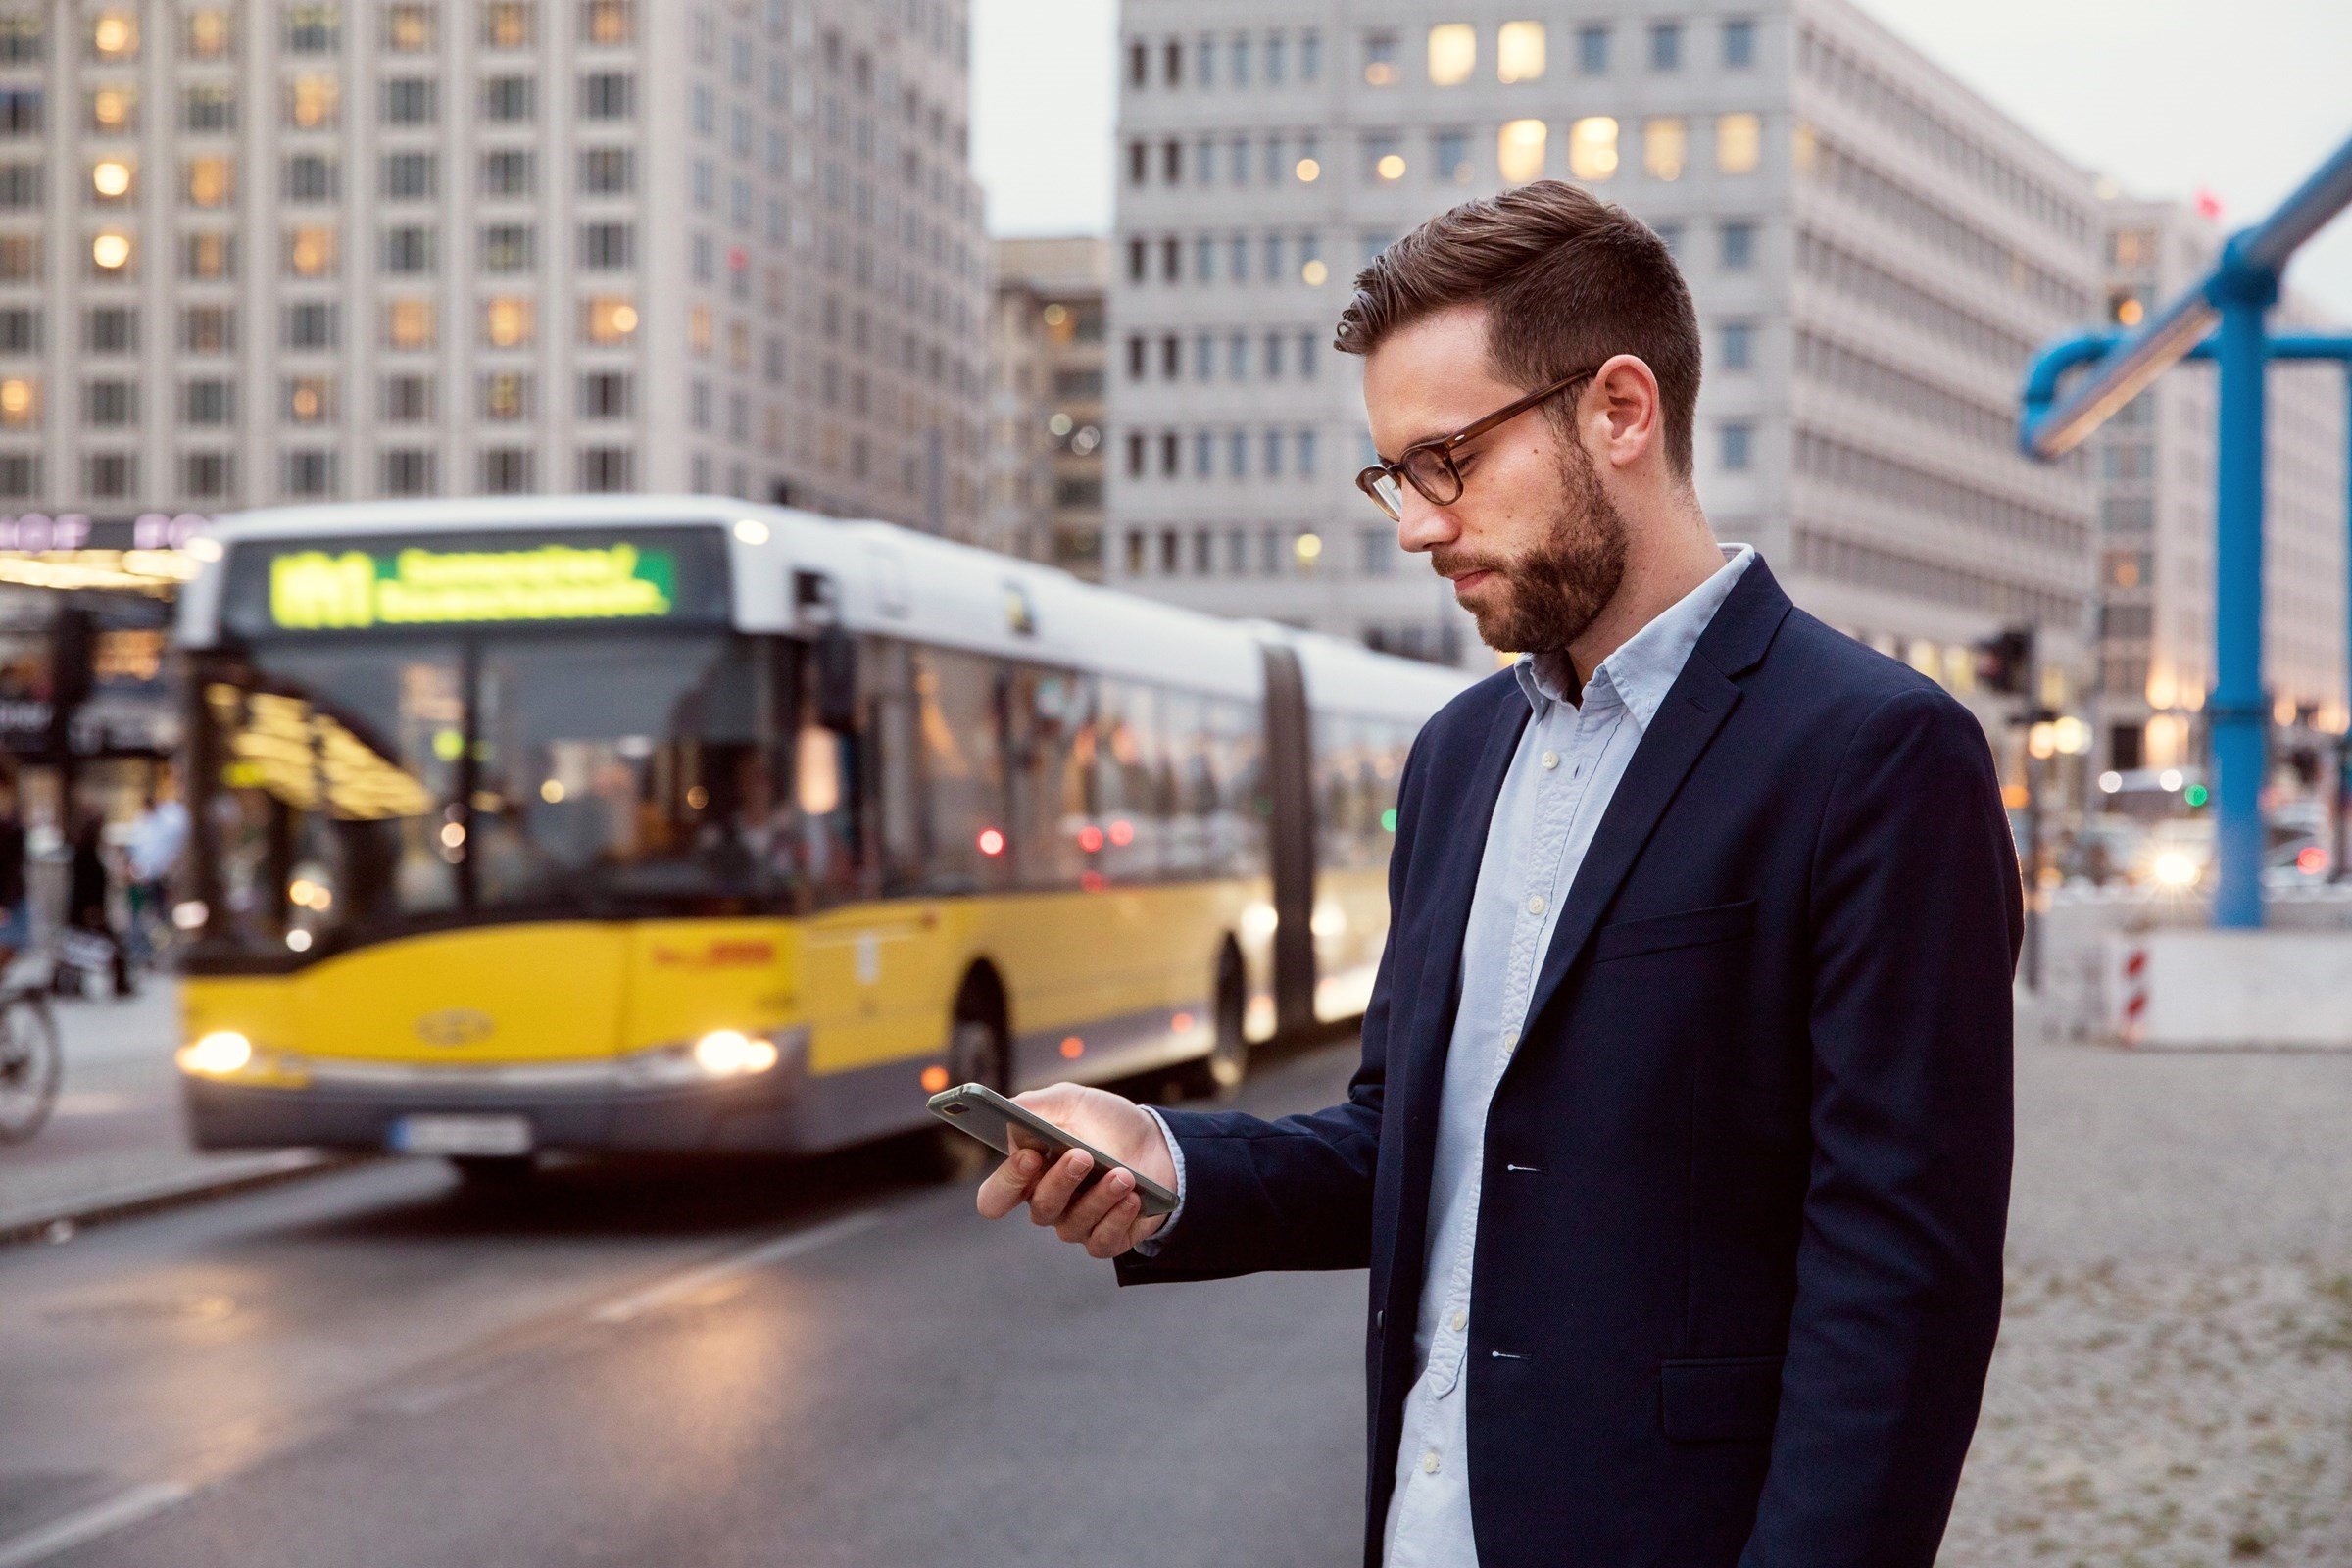 homme en veste bleue regardant son smartphone arrière plan flou avec bus jaune